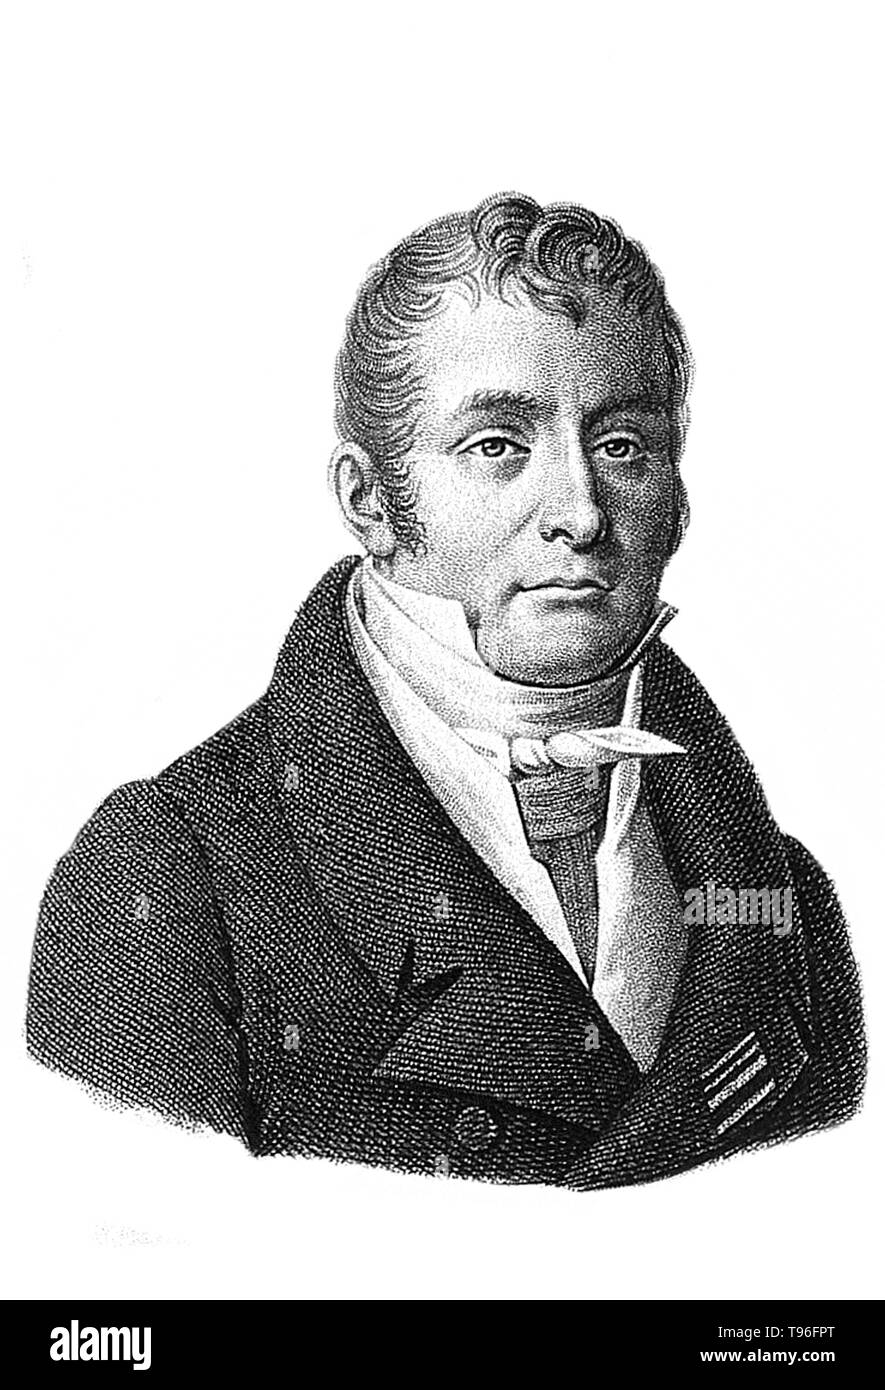 Il barone Guillaume Dupuytren (5 ottobre 1777 - 8 febbraio 1835) era un francese anatomista e chirurgo militare. Sebbene egli ha guadagnato molta stima per il trattamento di Napoleone Bonaparte emorroidi, egli è meglio conosciuto oggi per la sua descrizione di Dupuytren's contrattura che è chiamato dopo di lui e che egli azionata per la prima volta nel 1831 e pubblicato sulla rivista The Lancet nel 1834. Morì nel 1835 all'età di 57. Foto Stock